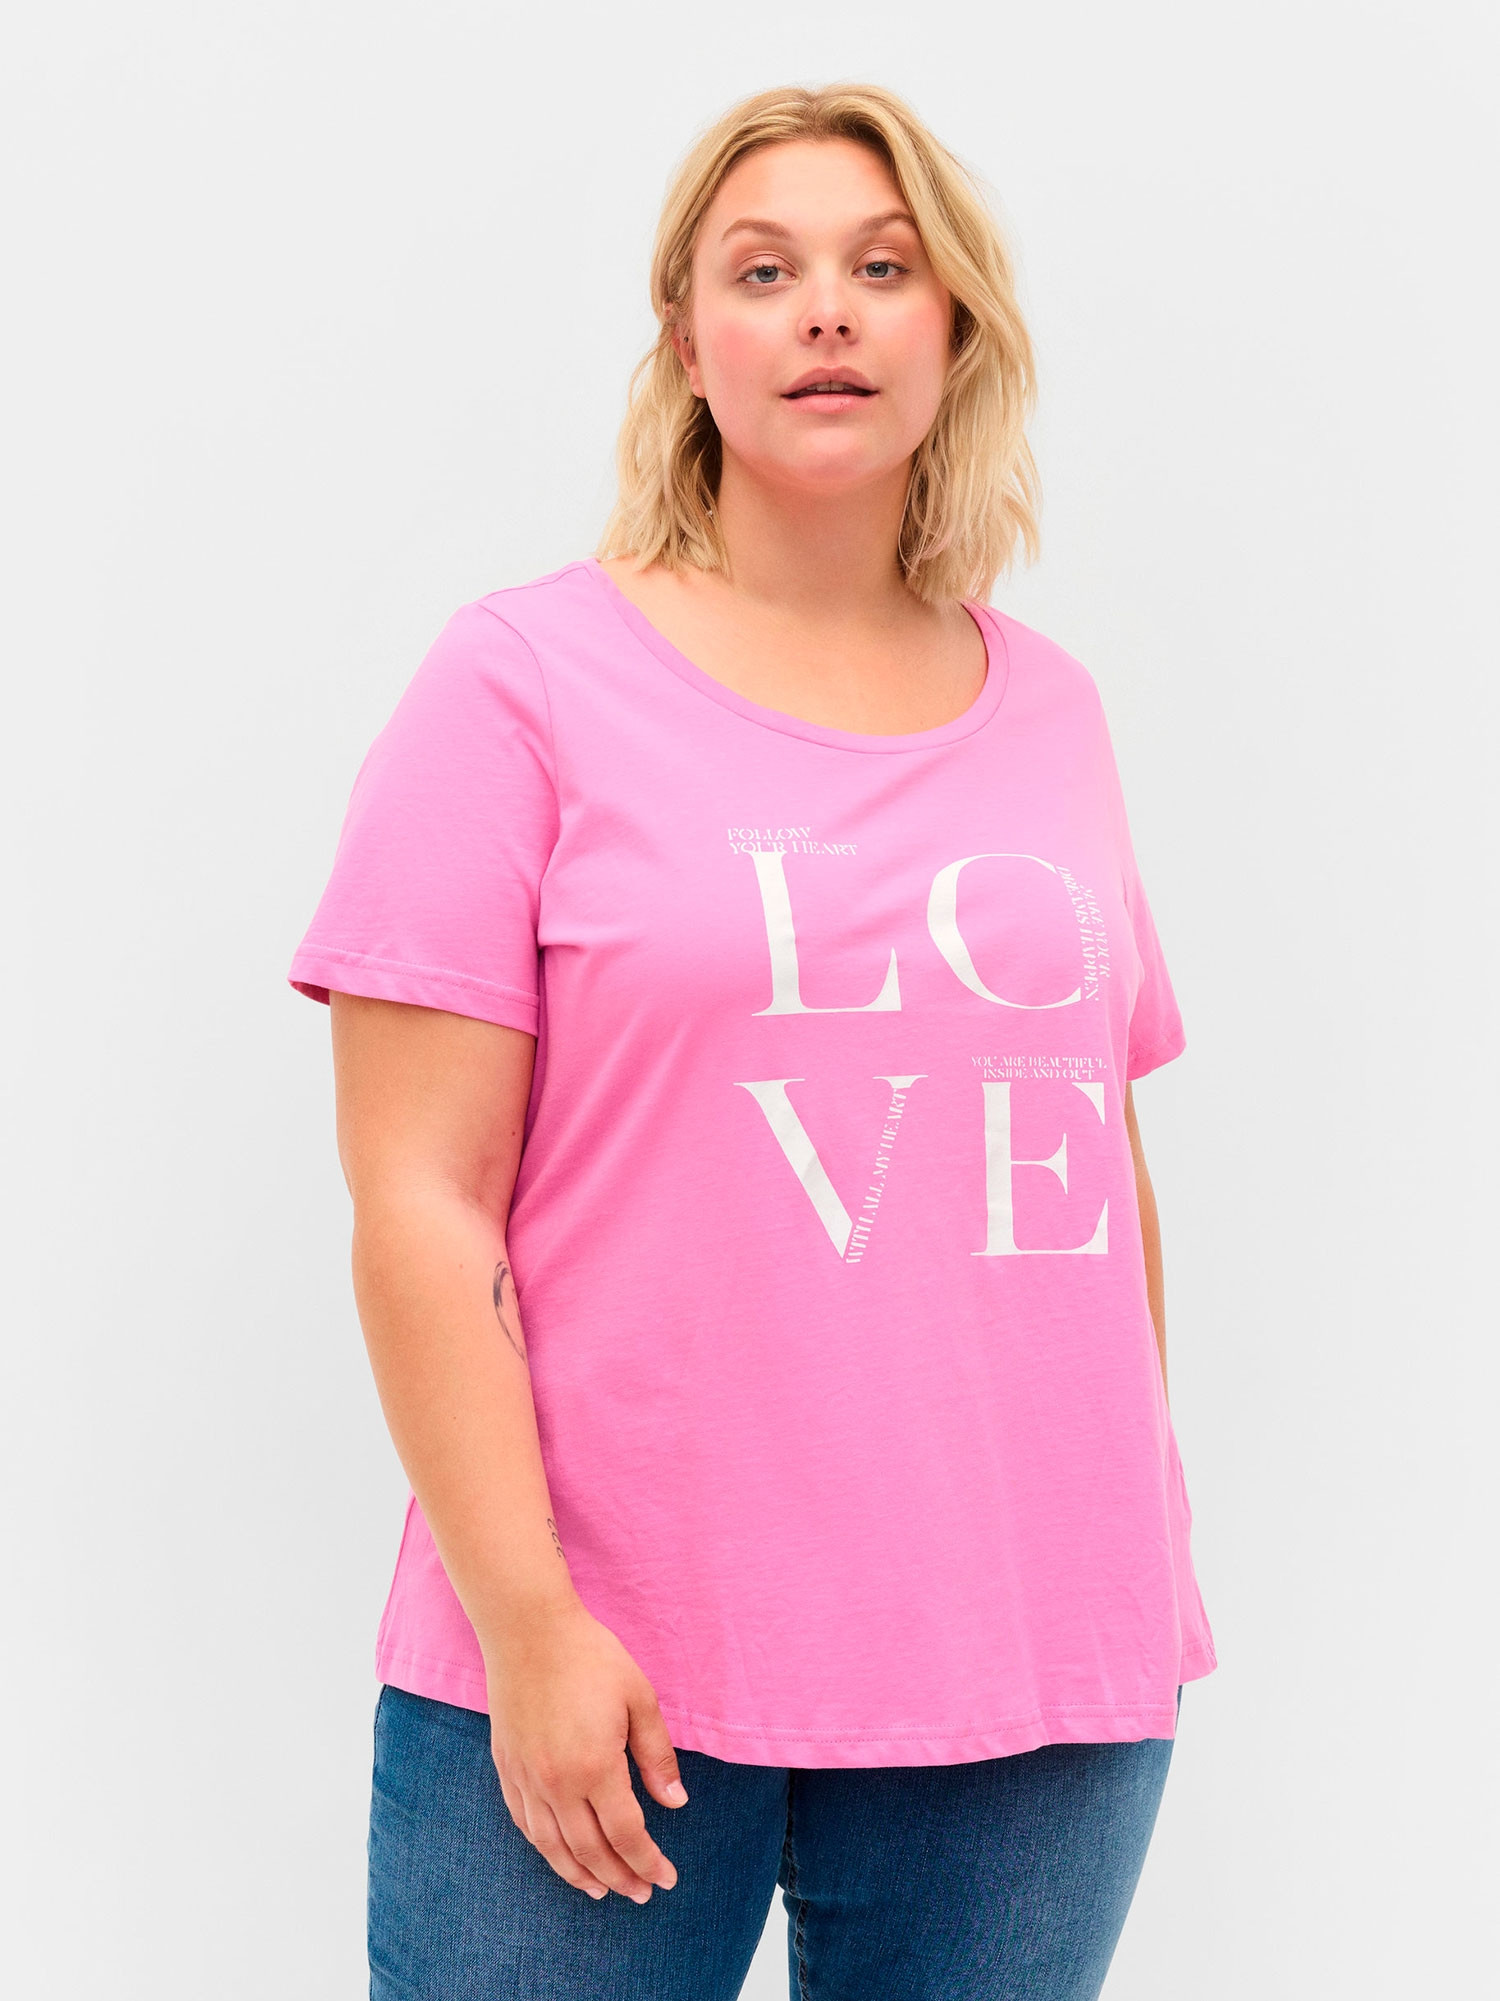 Lys lilla T-skjorte i A-fasong med 'LOVE' print